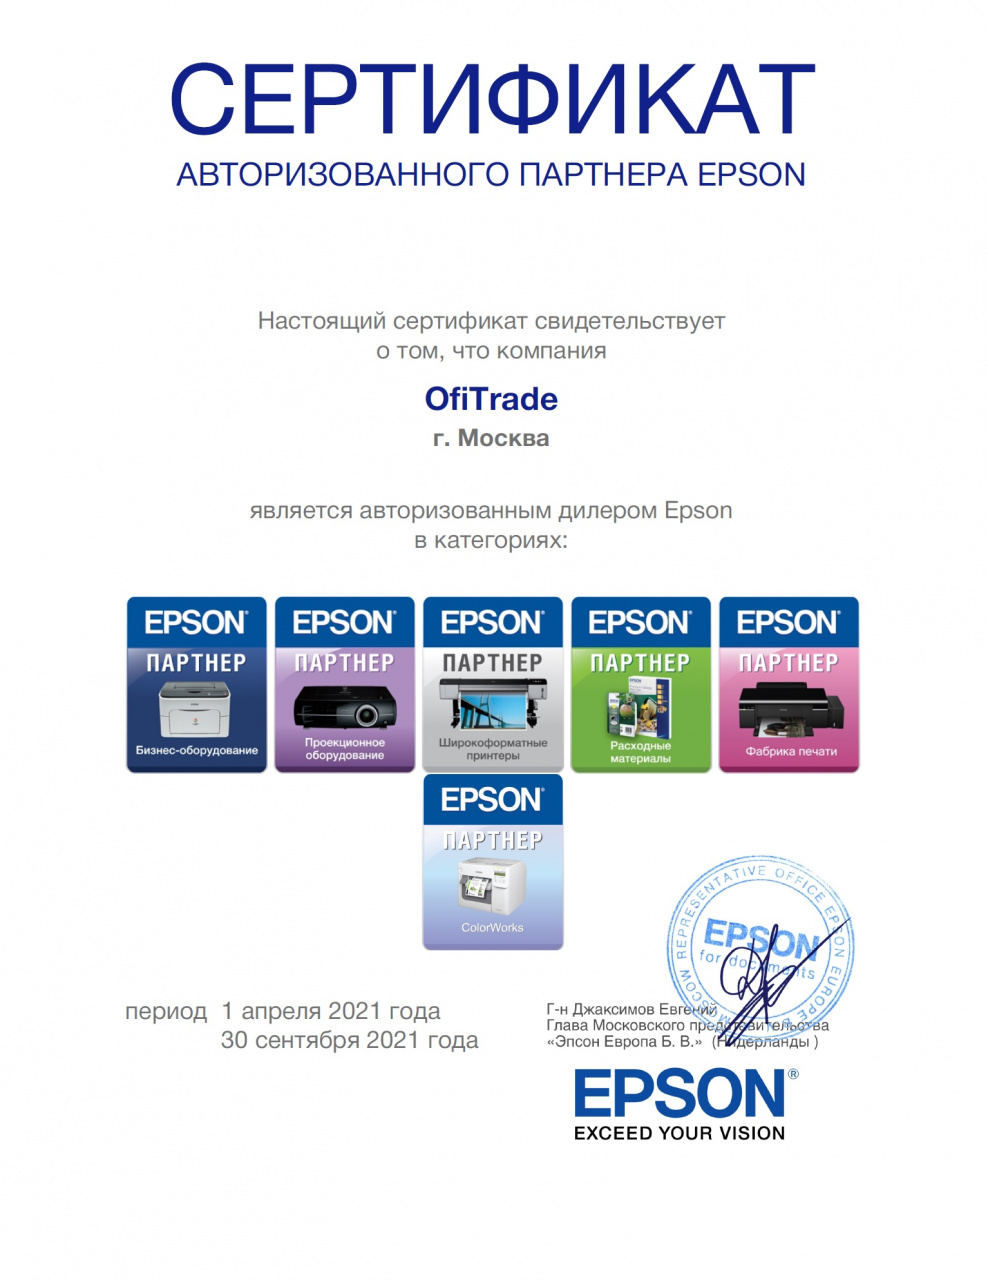 Сертификат авторизованного партнера Epson P077M9344-OfiTrade 2021